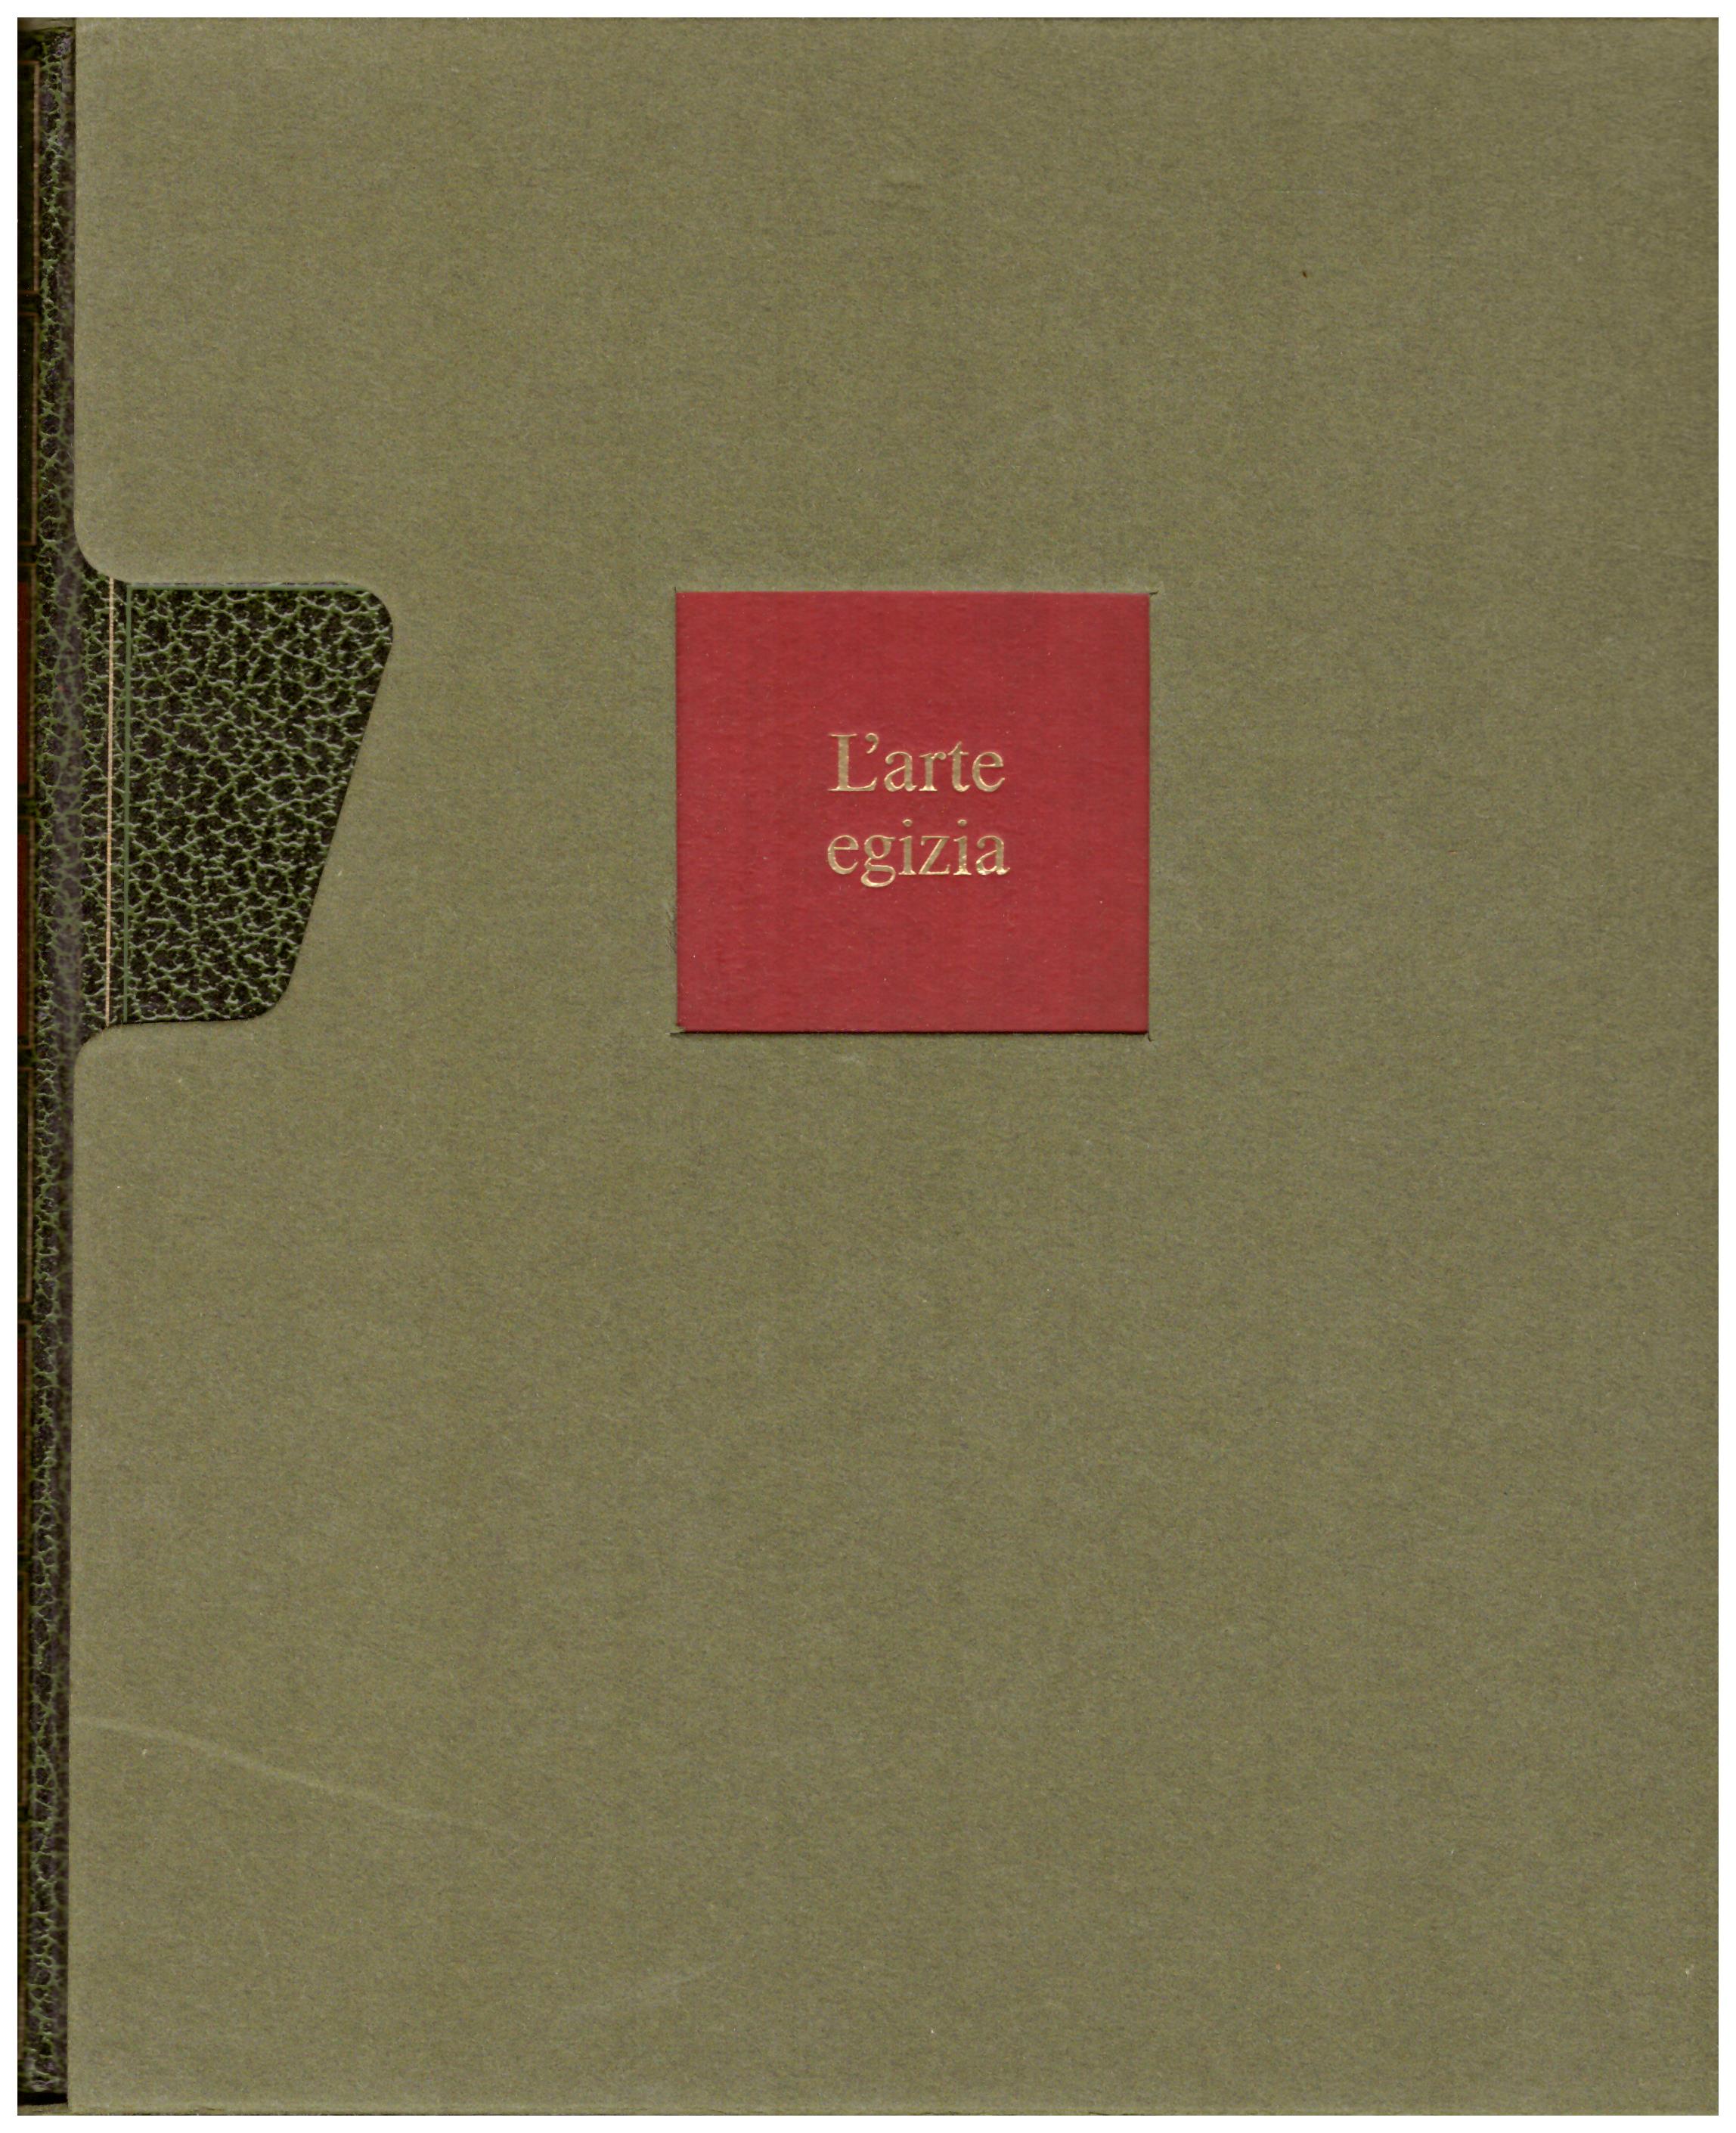 Titolo: L'arte nel mondo n.3 L'arte egizia Autore: Wolfhart Westendorf Editore: Rizzoli, 1970